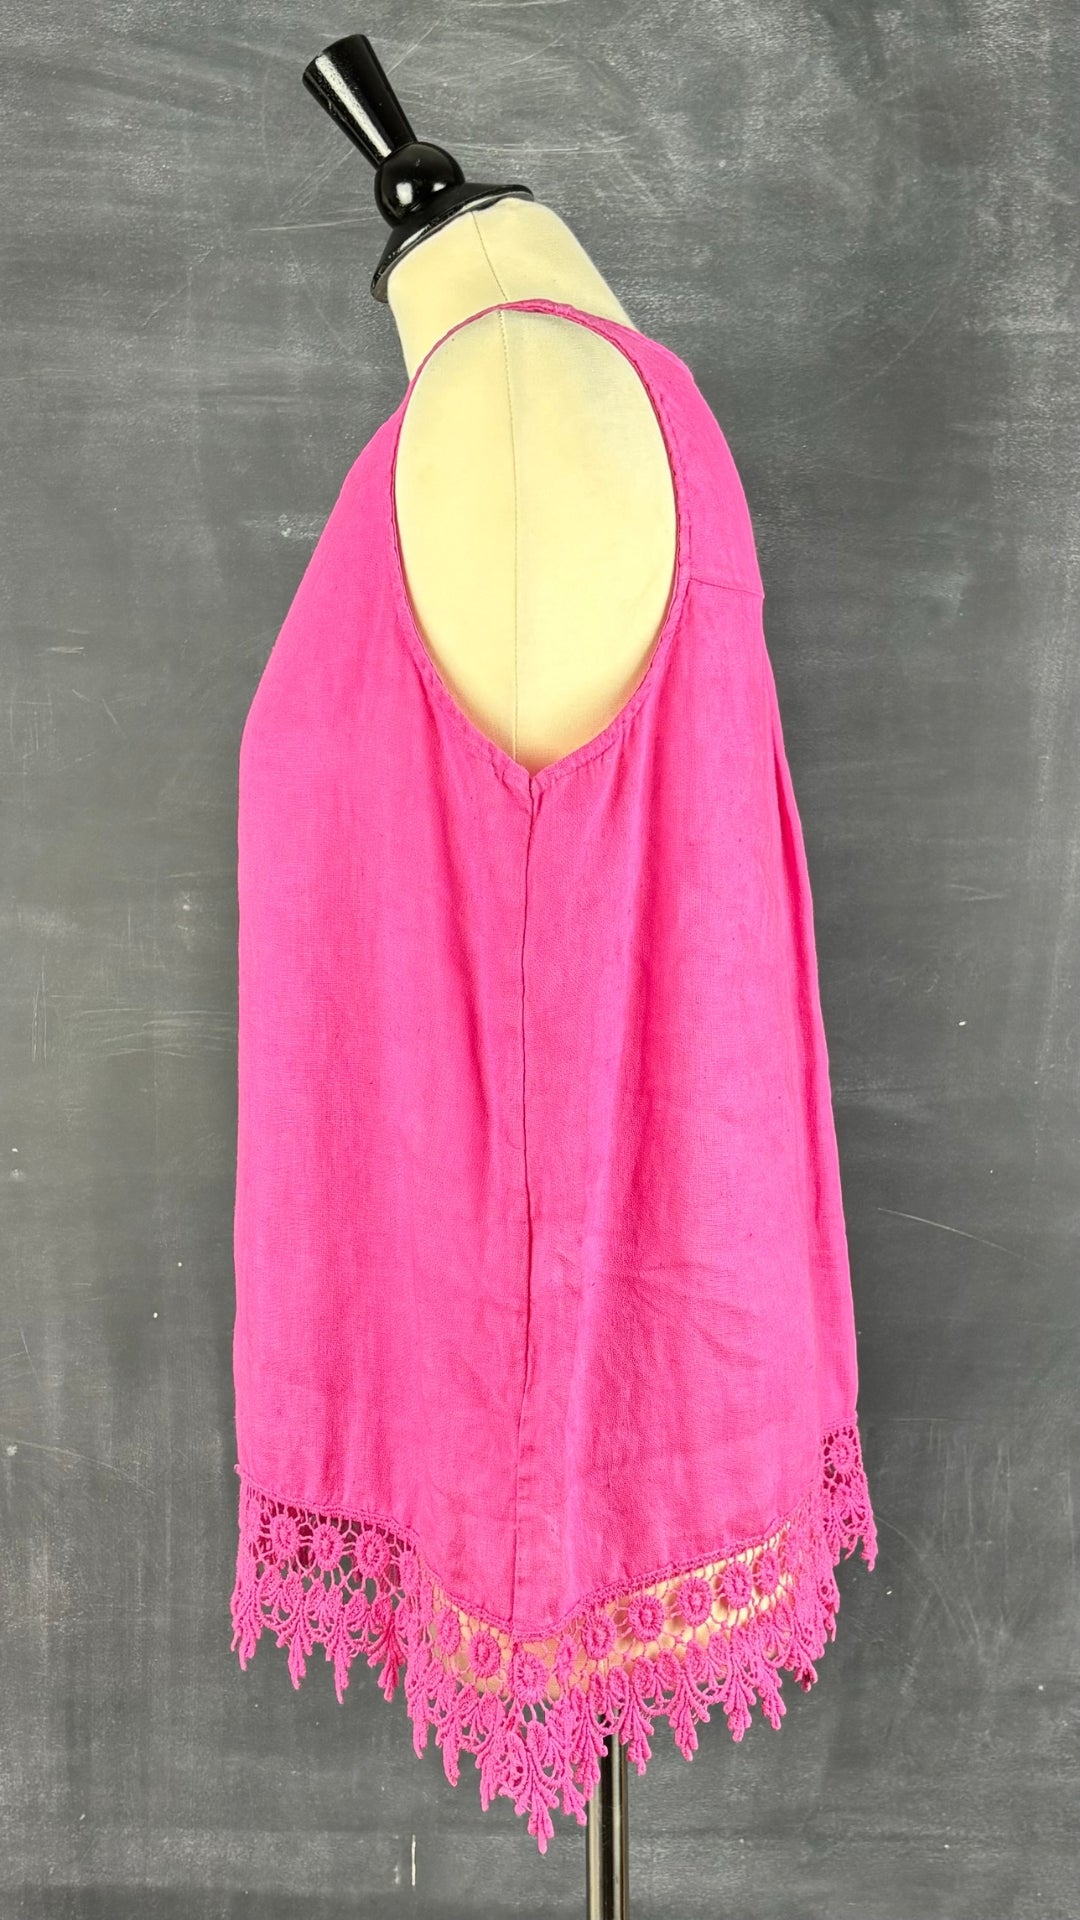 Camisole en lin rose avec ourlet en dentelle Terzo Millennio, taille large. Vue de côté.